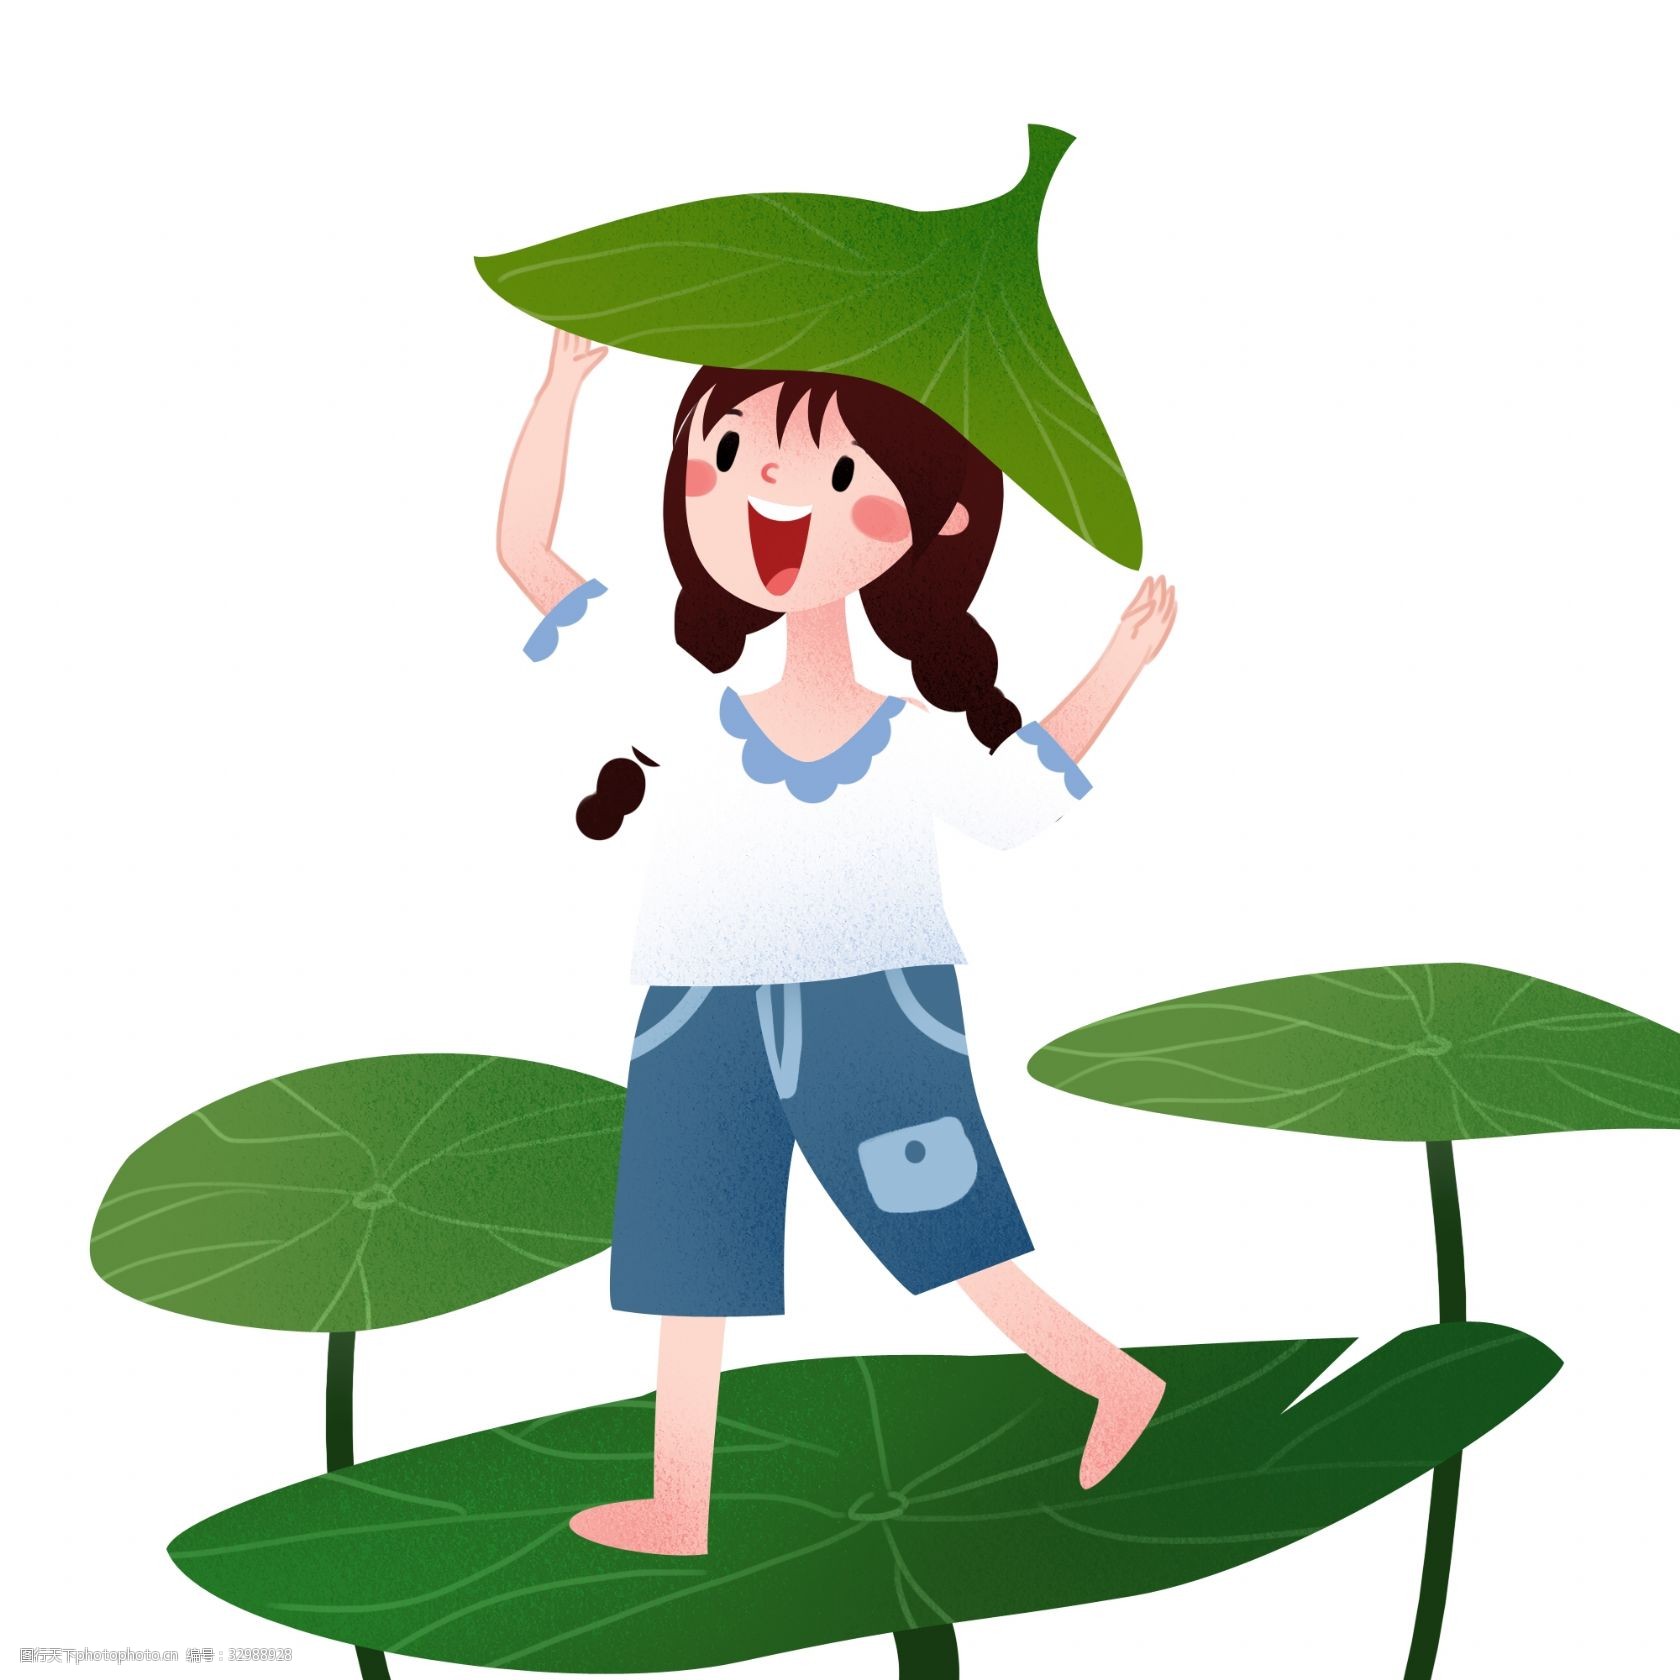 拿着叶子挡雨的女孩 立夏人物插画 叶子挡雨 漂亮的小女孩 绿色的荷叶